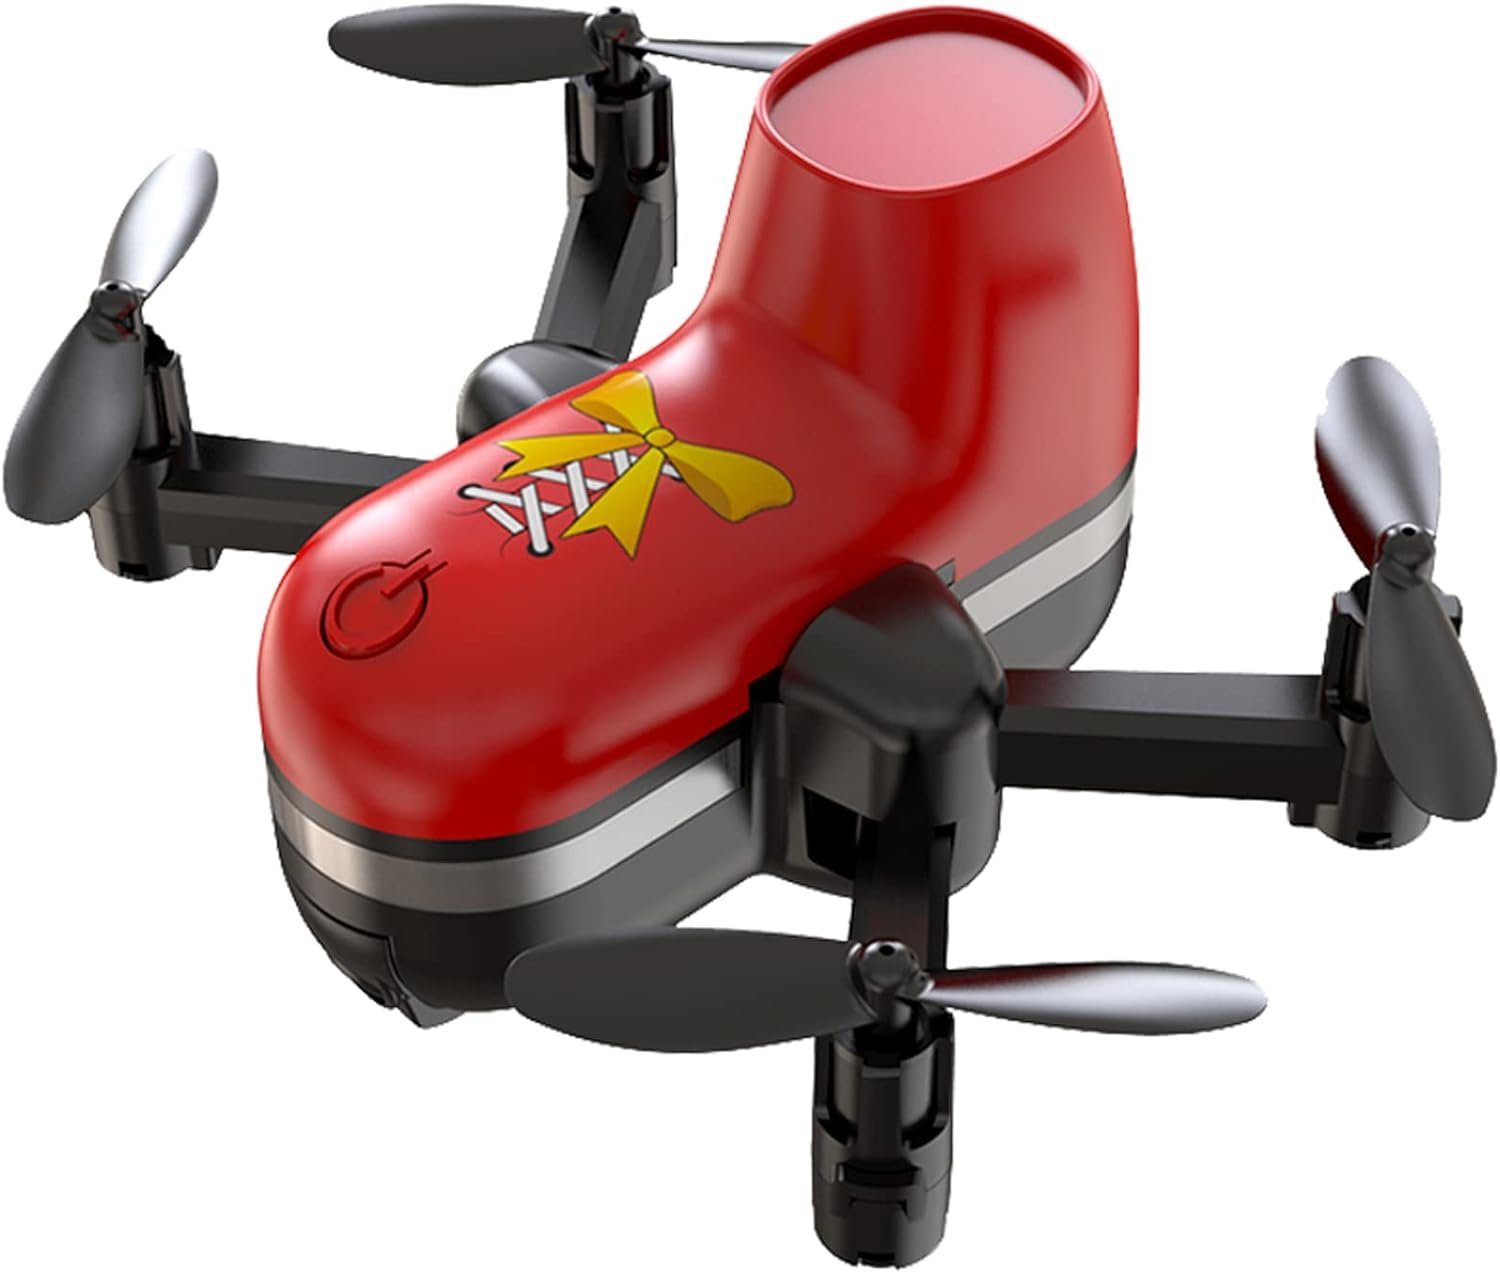 OBEST Drohne (Neues FernsteuerDrohne für Landluft) Kinder Mini für Drohne Spielzeug